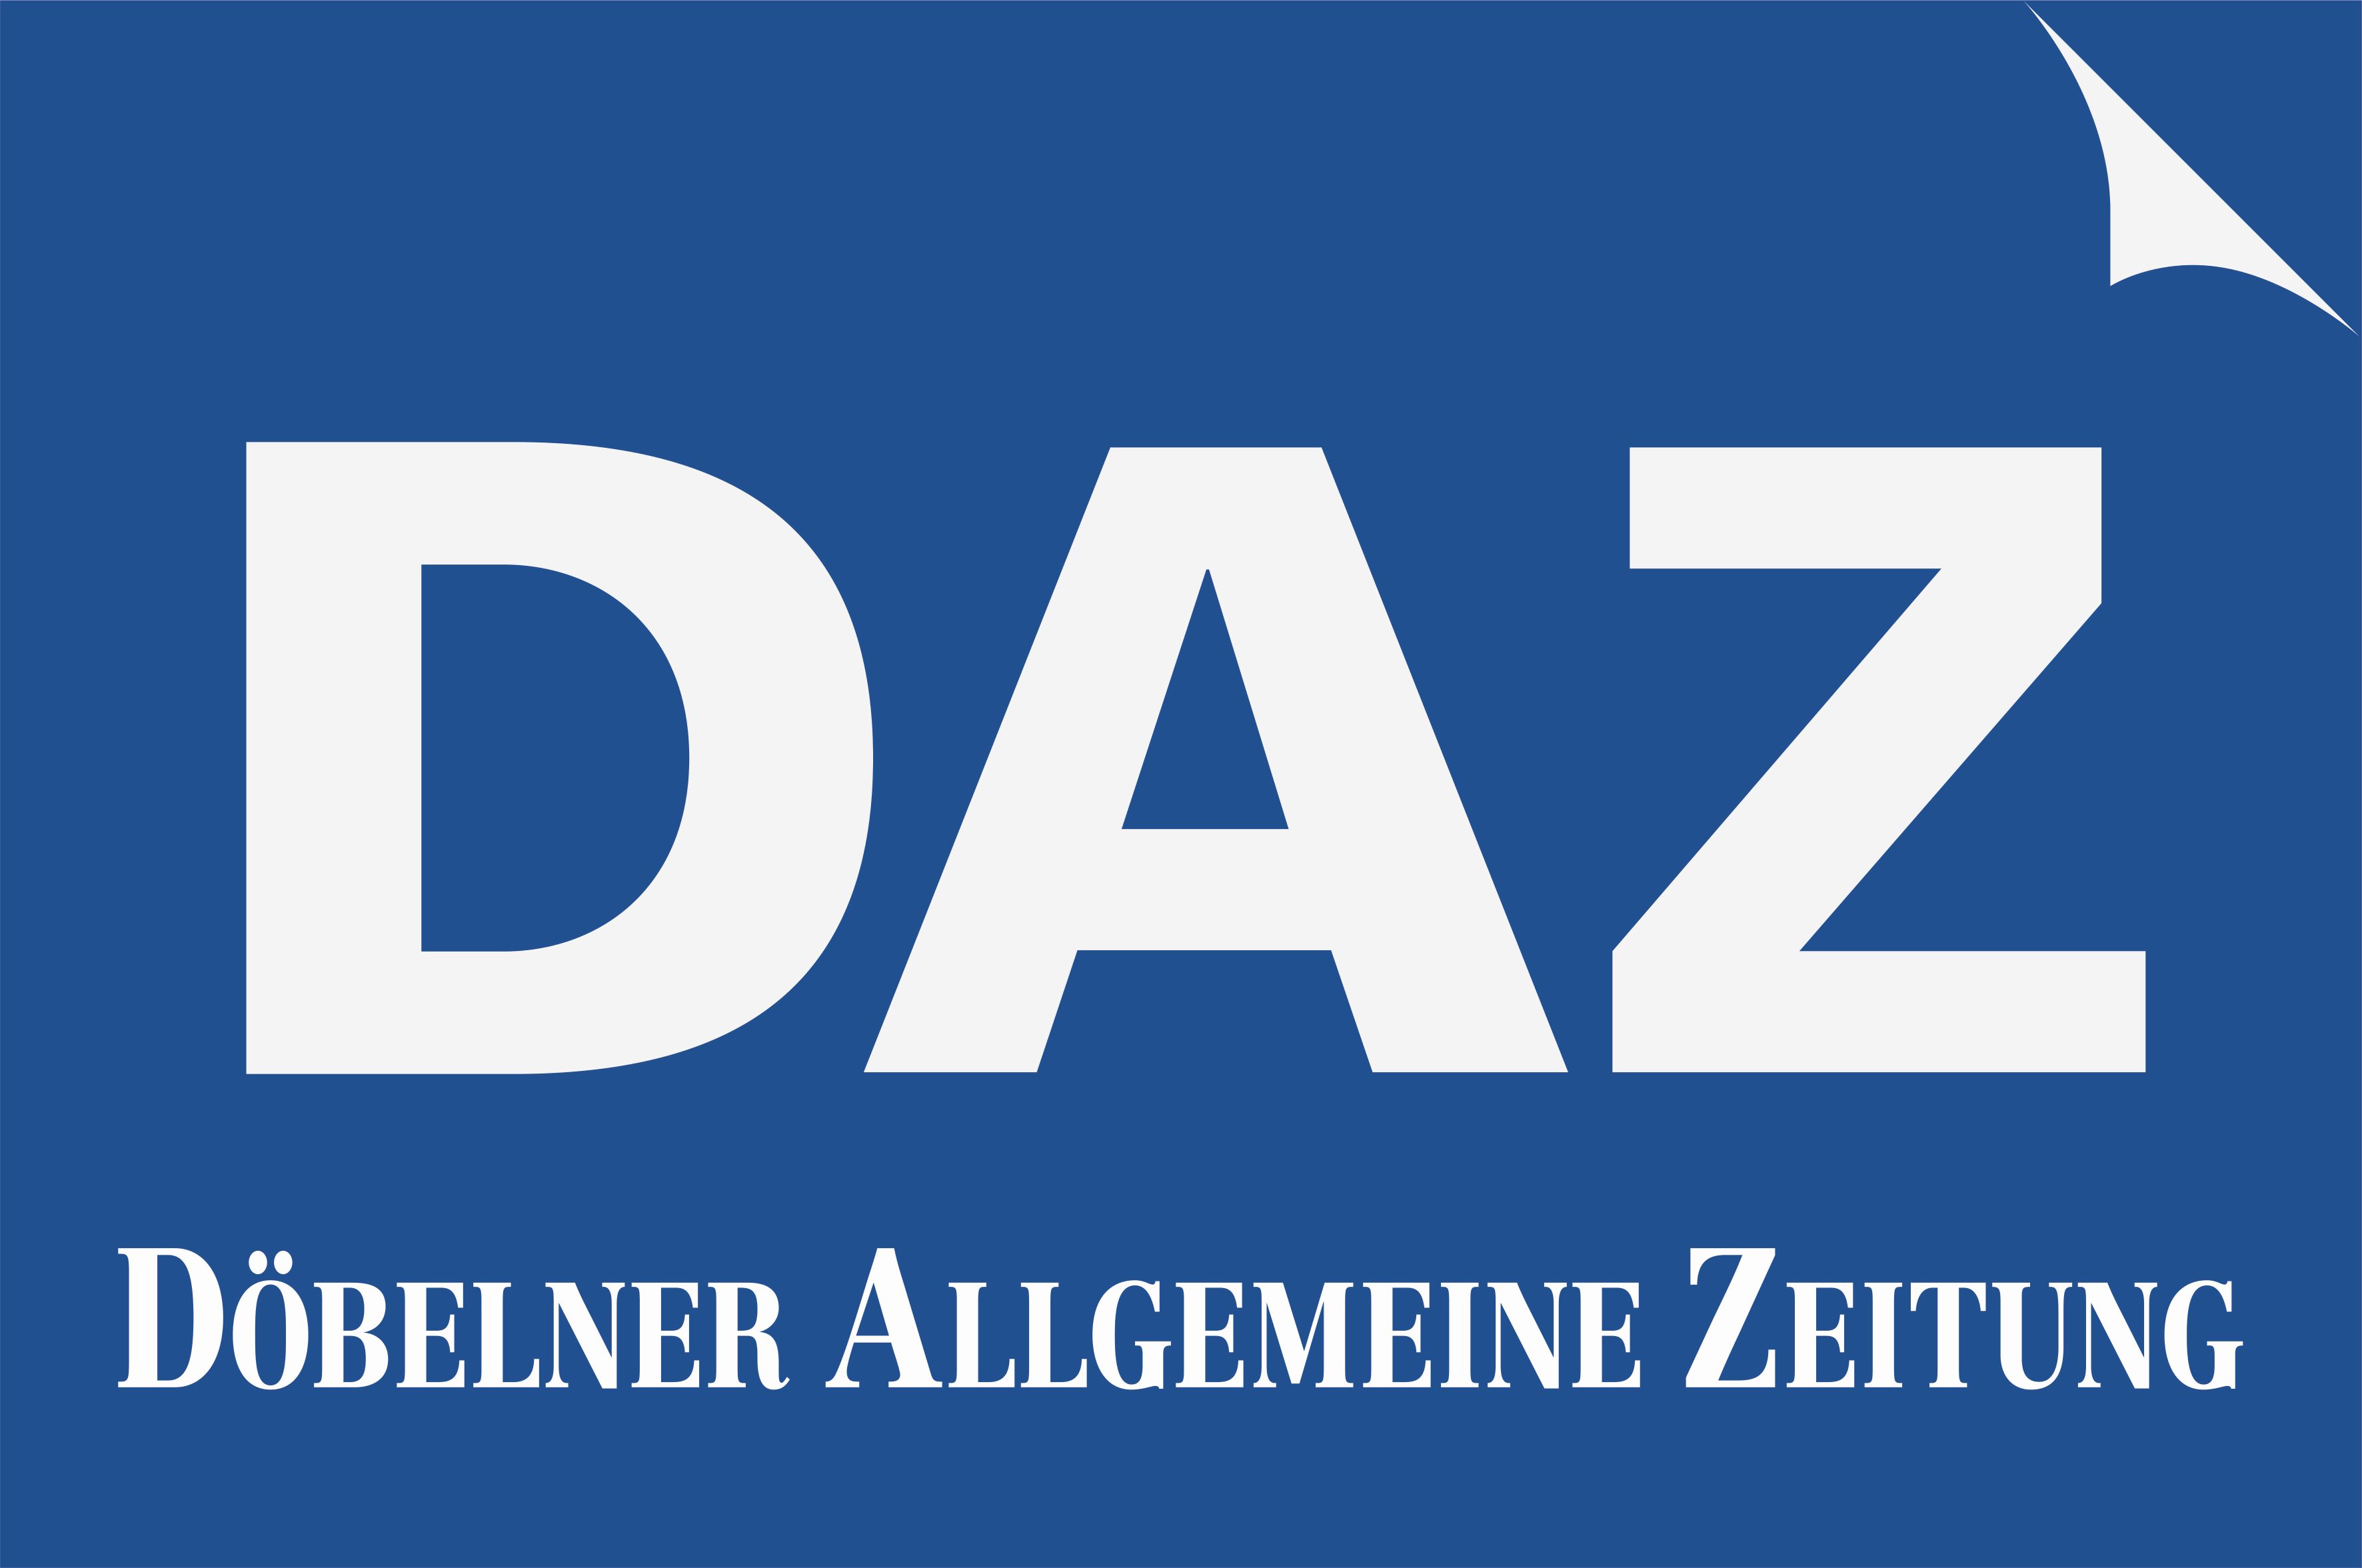 Döbelner Allgemeine Zeitung